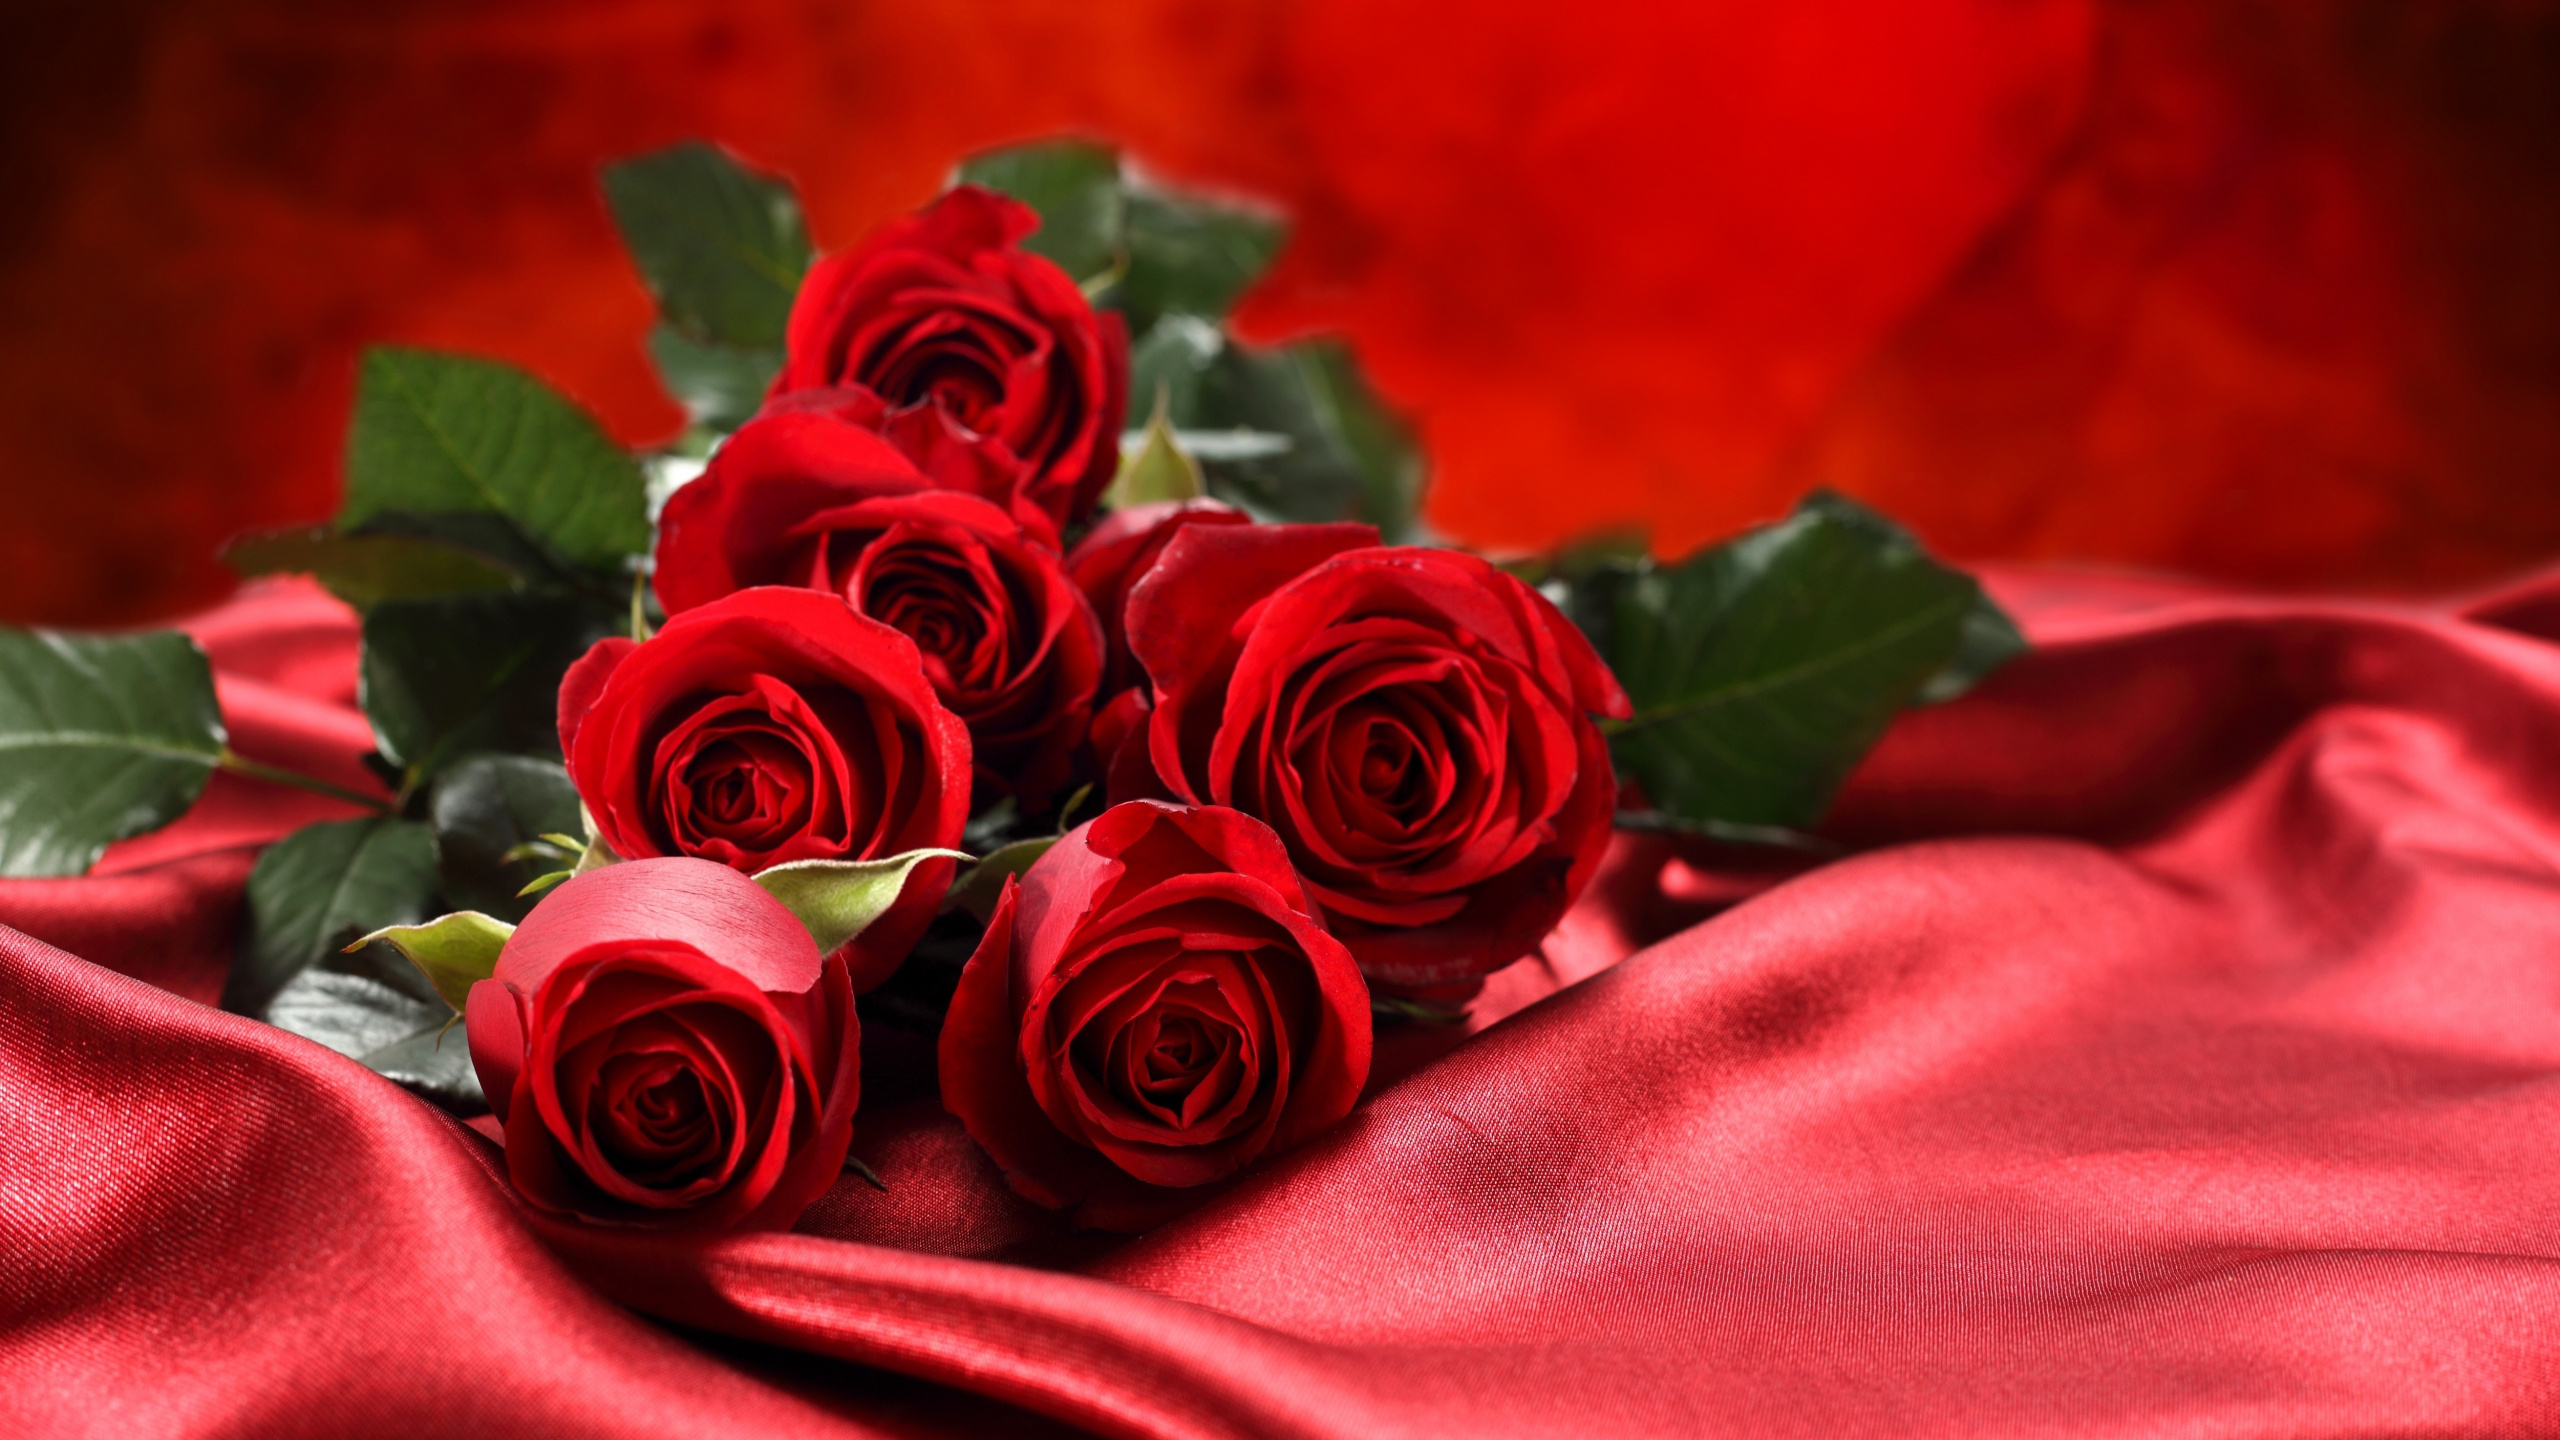 Обои Роза, цветочный букет, сад роз, красный цвет, семья Роуз в разрешении 2560x1440